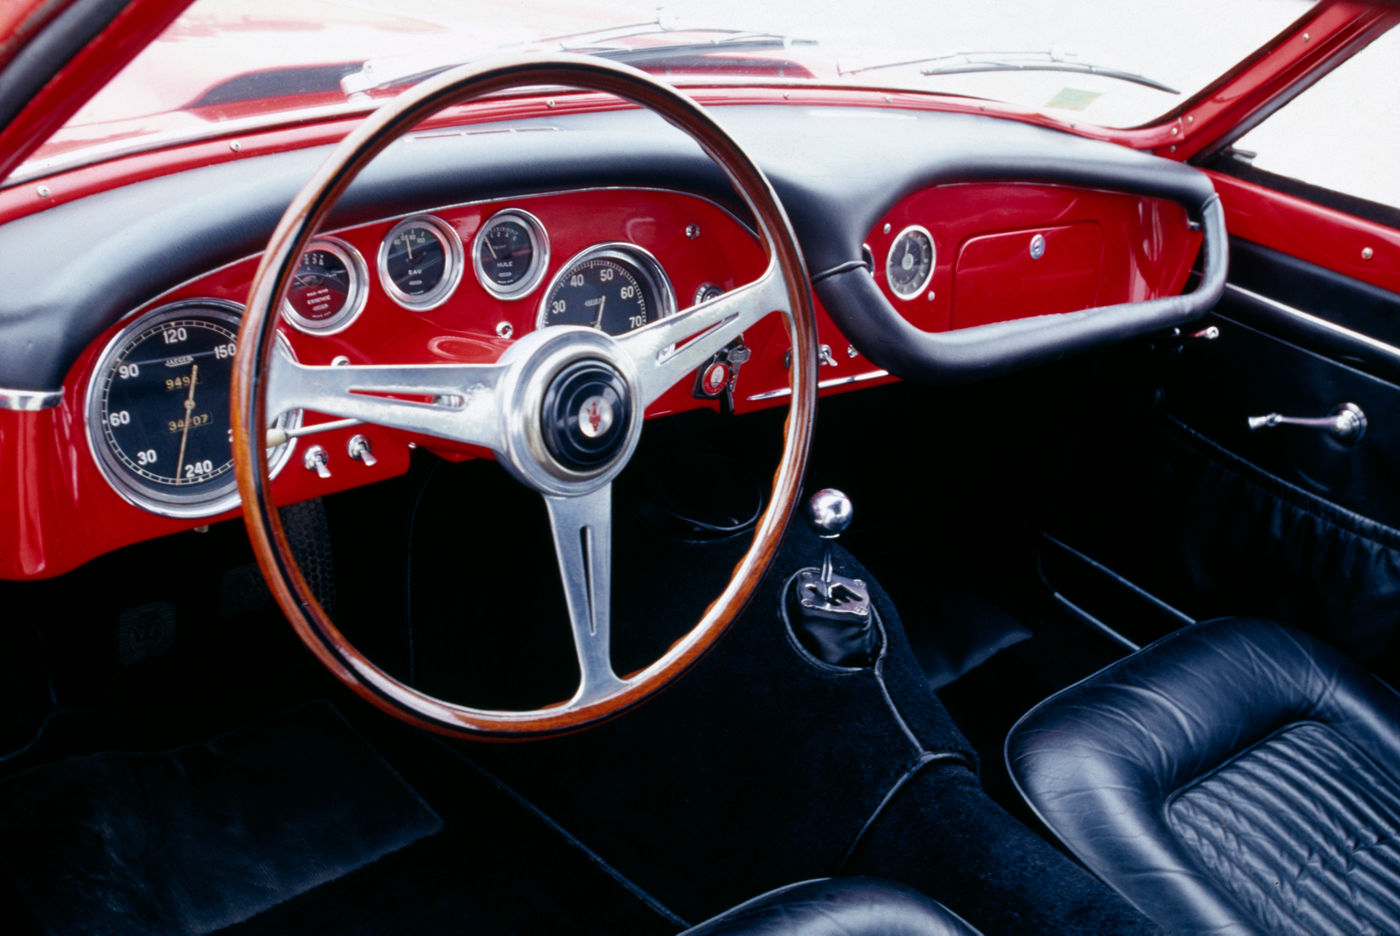 1954 Maserati 2000 Gran Turismo - interior view of the classic car model